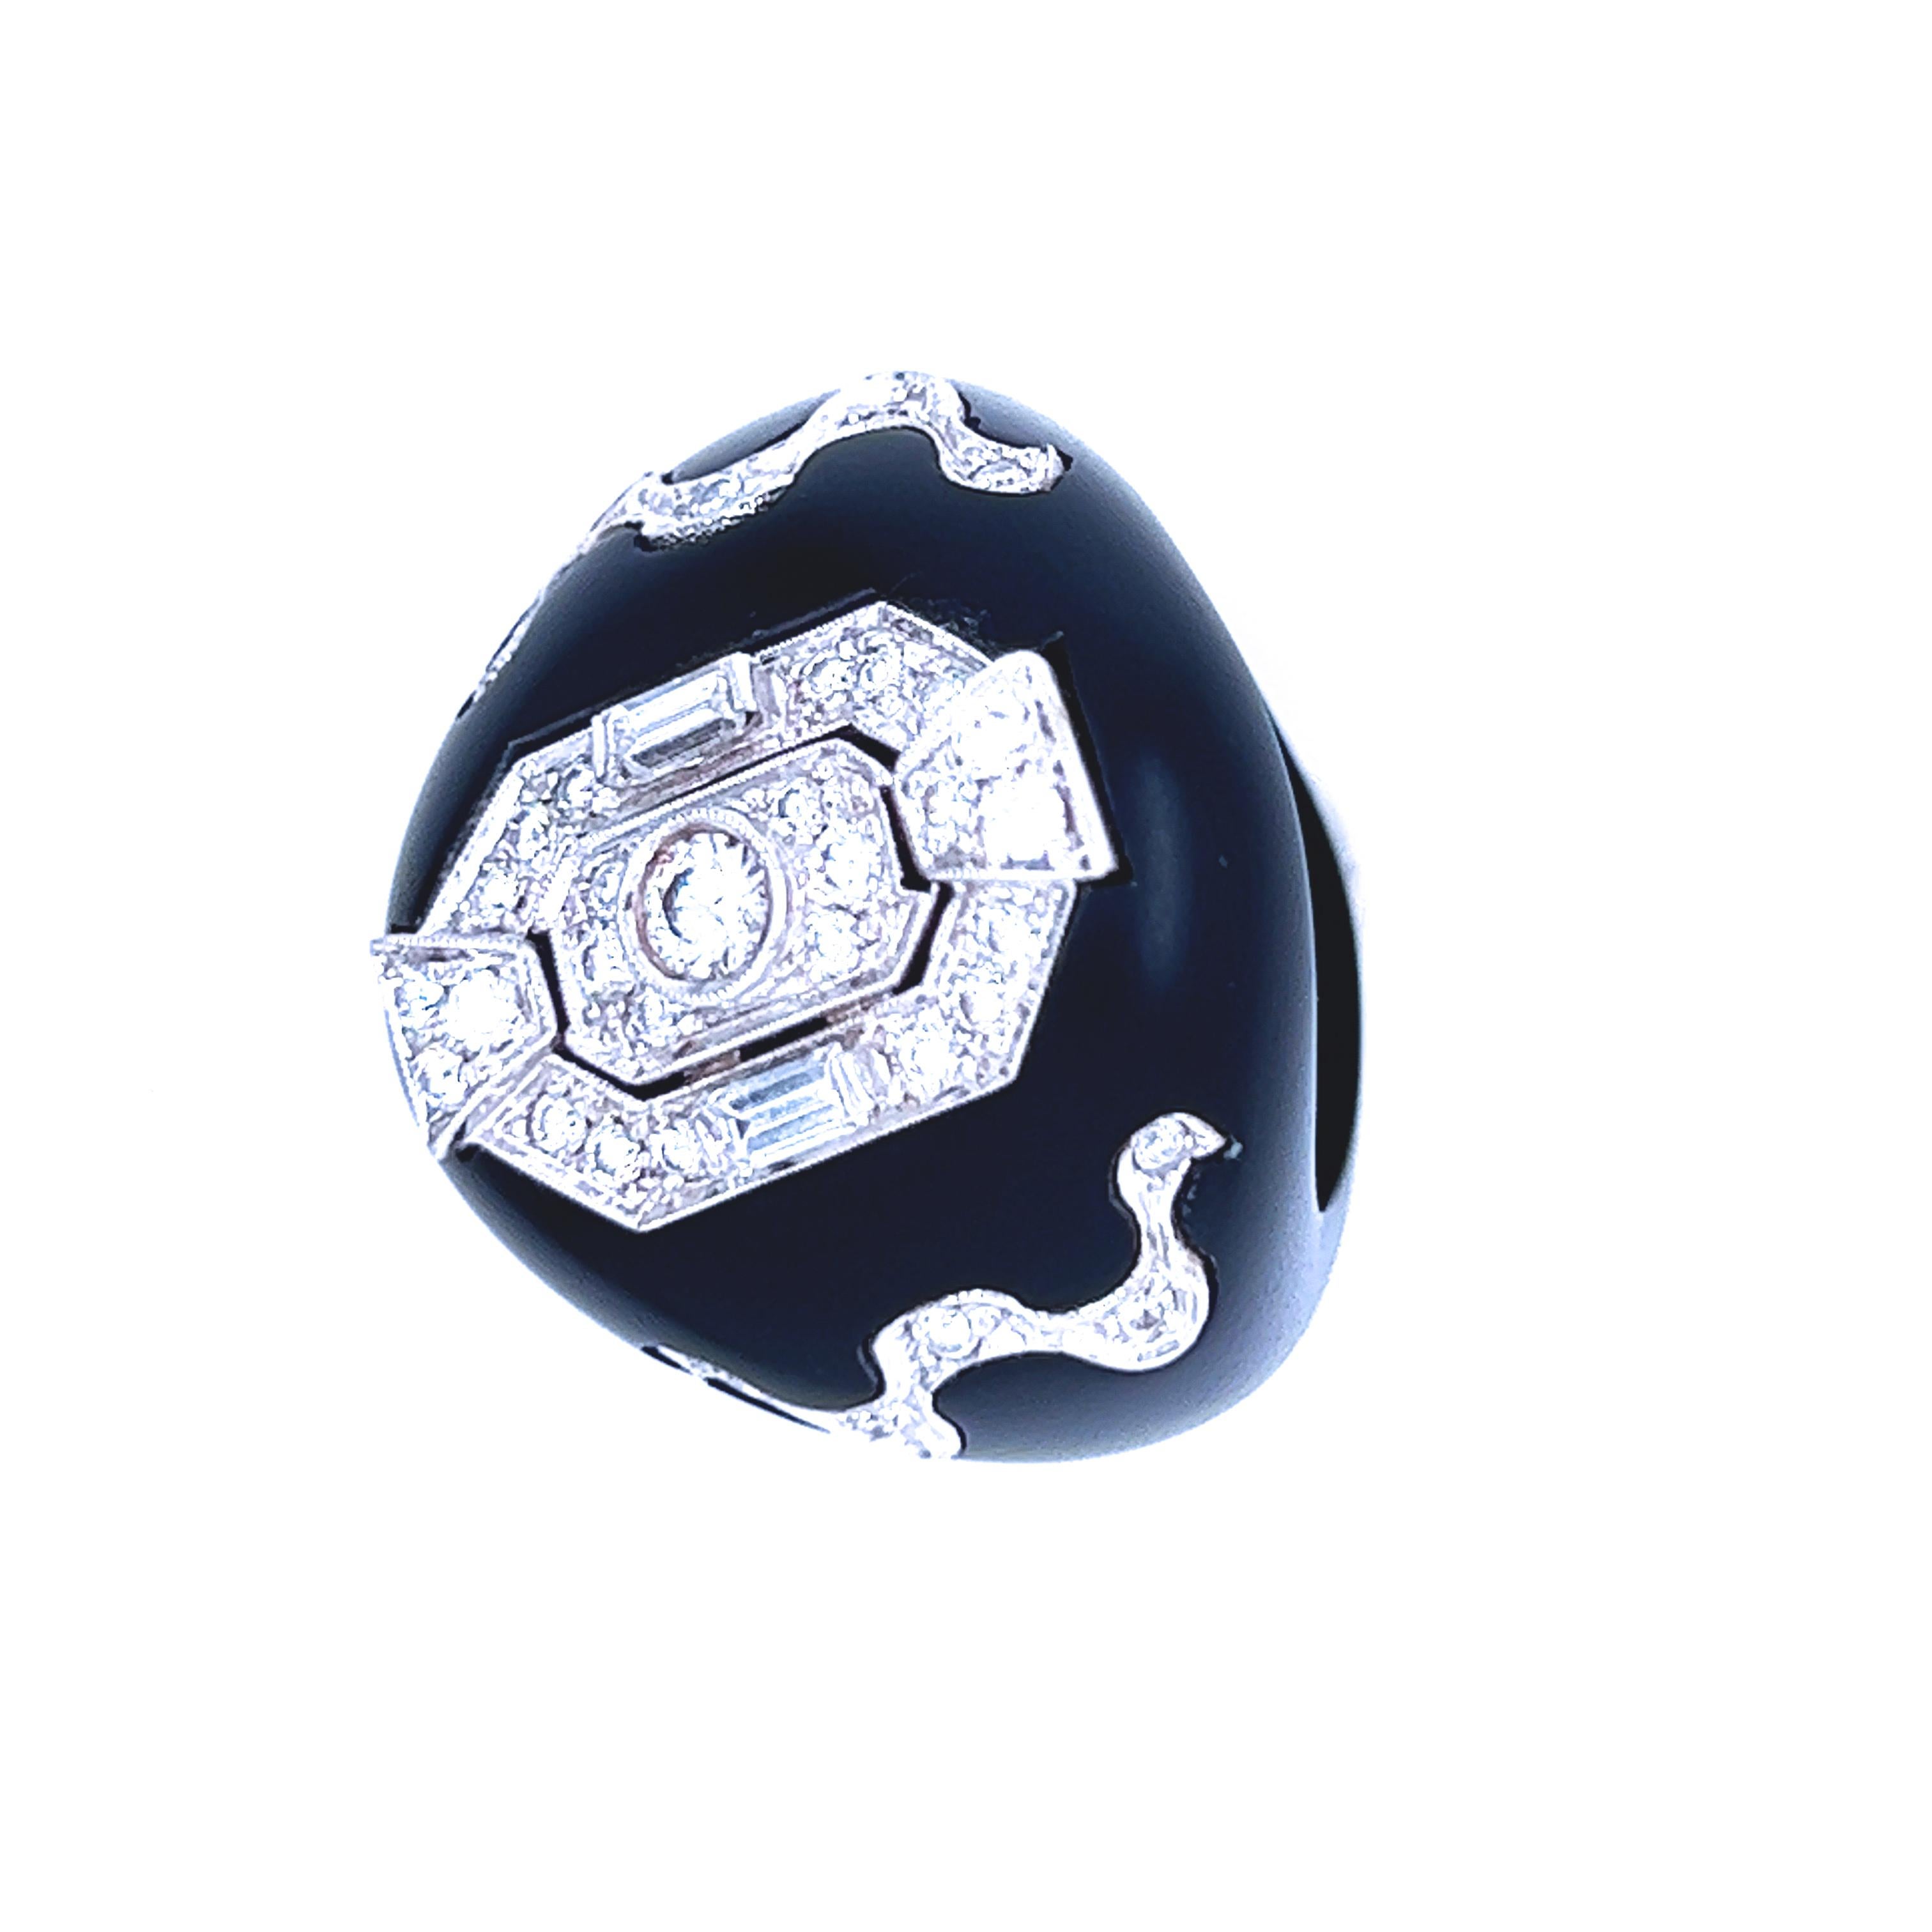 Die Spitze eines antiken Art Déco-Originals aus dem Jahr 1930 ist in einen zeitgenössischen, von Hand eingelegten Jet-Ring gefasst, um ein zeitloses, absolut schickes Stück zu schaffen.
 1,02 Kt weißer Baguette- und Brillant-Diamanten von höchster